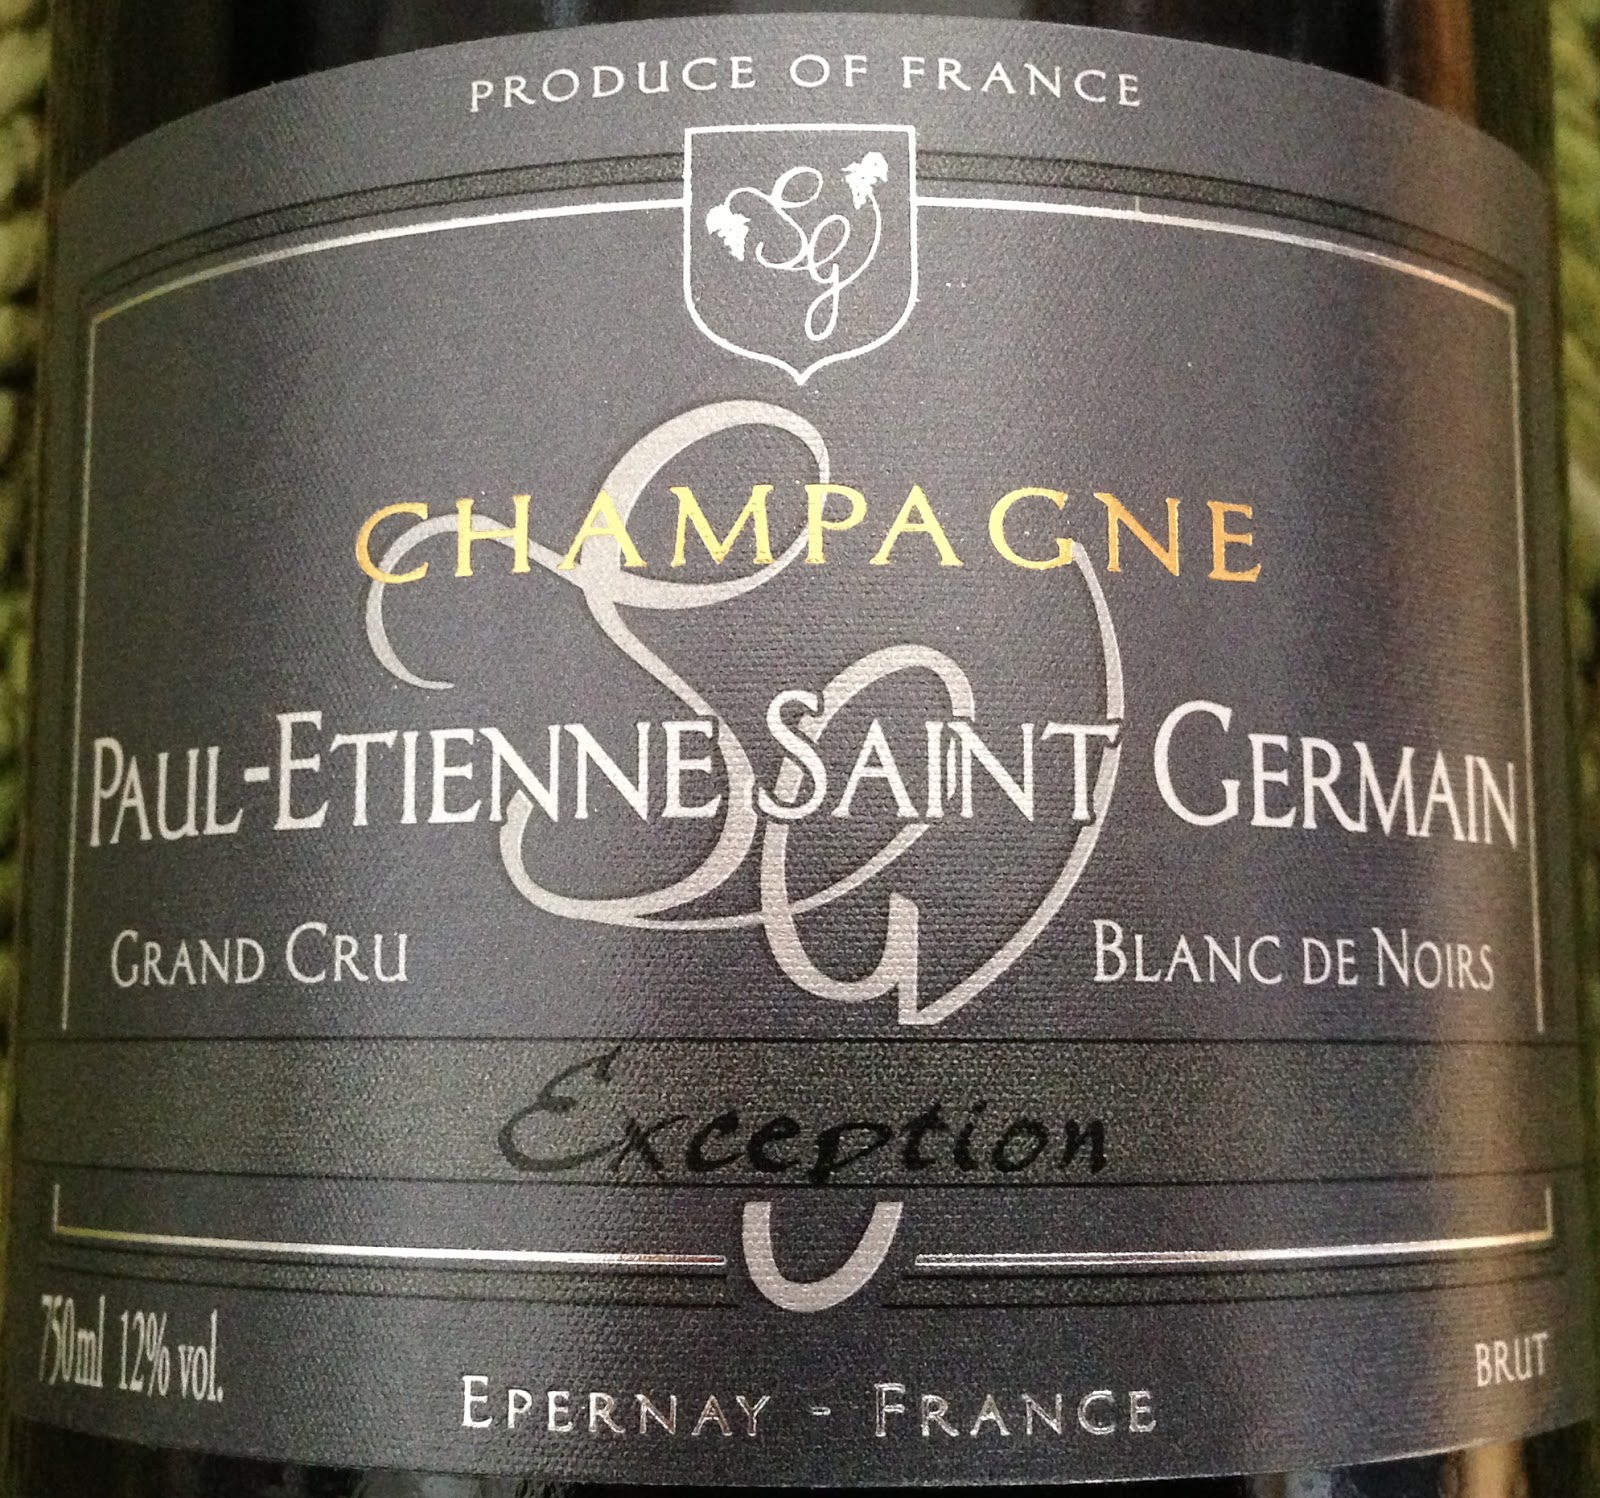 NV Paul Etienne Saint Germain Brut Champagne Exception Blanc De Noirs Grand Cru image